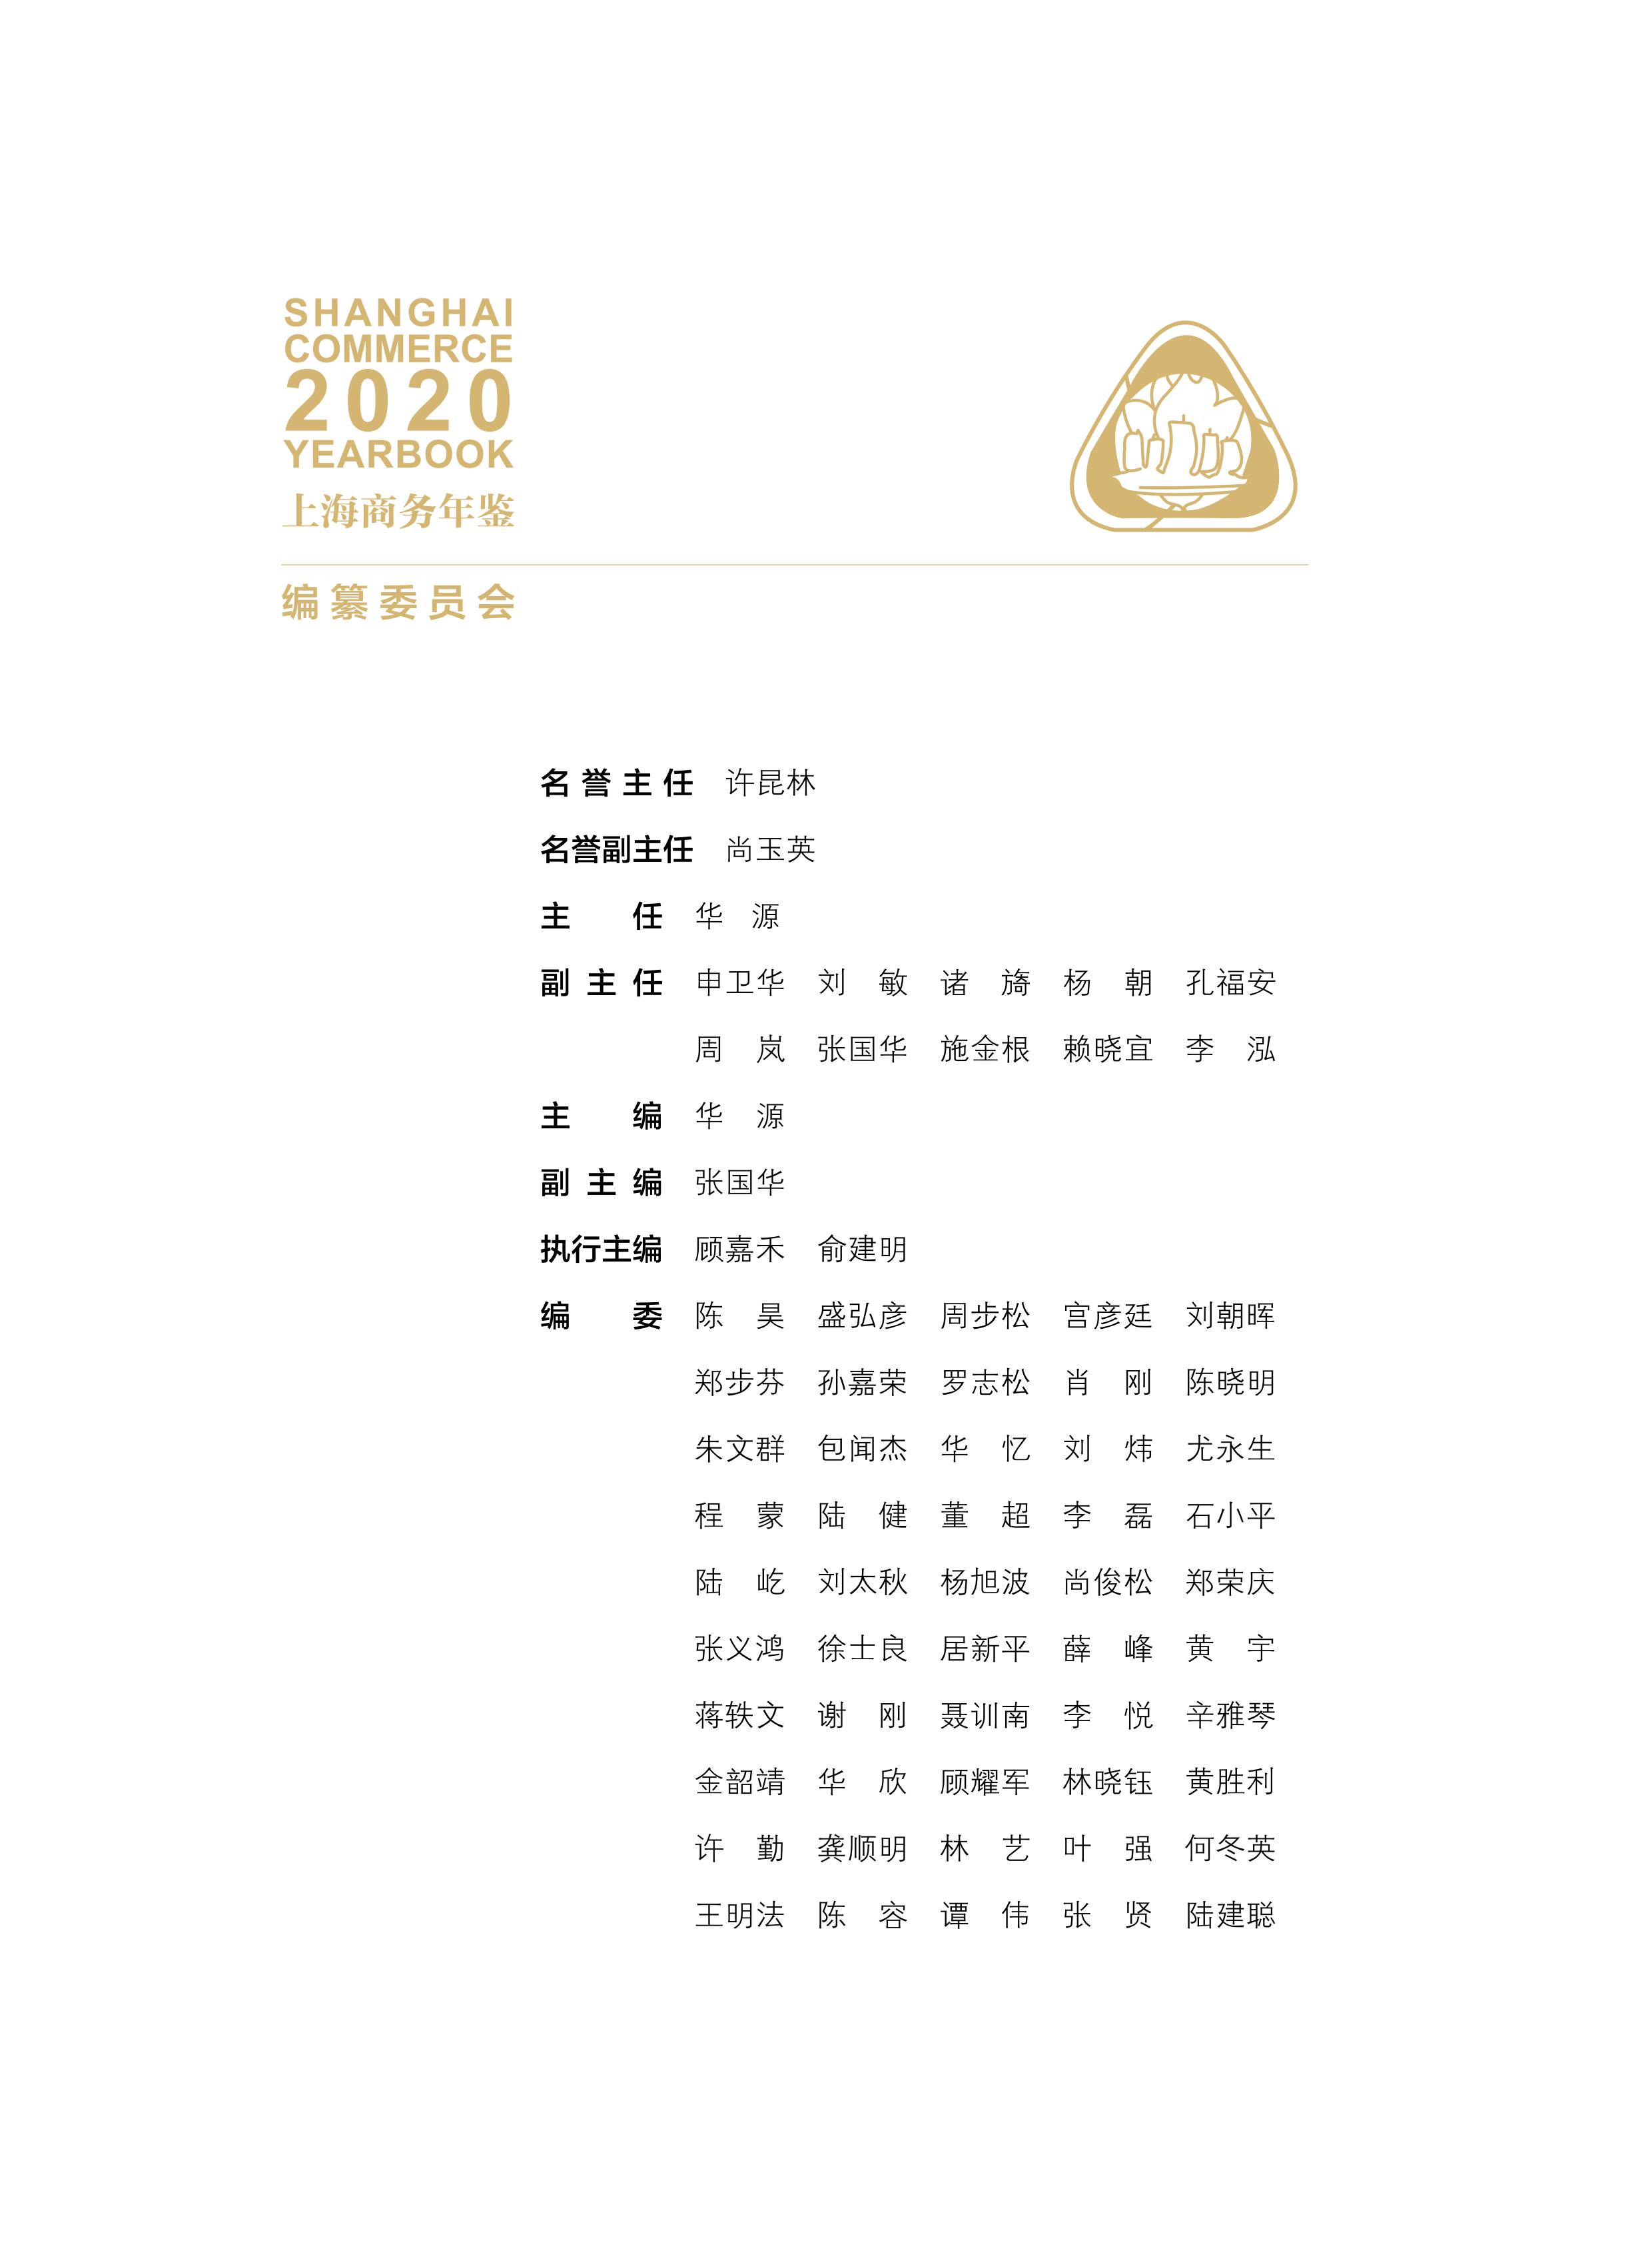 上海商务年鉴2020公开内容_03.jpg